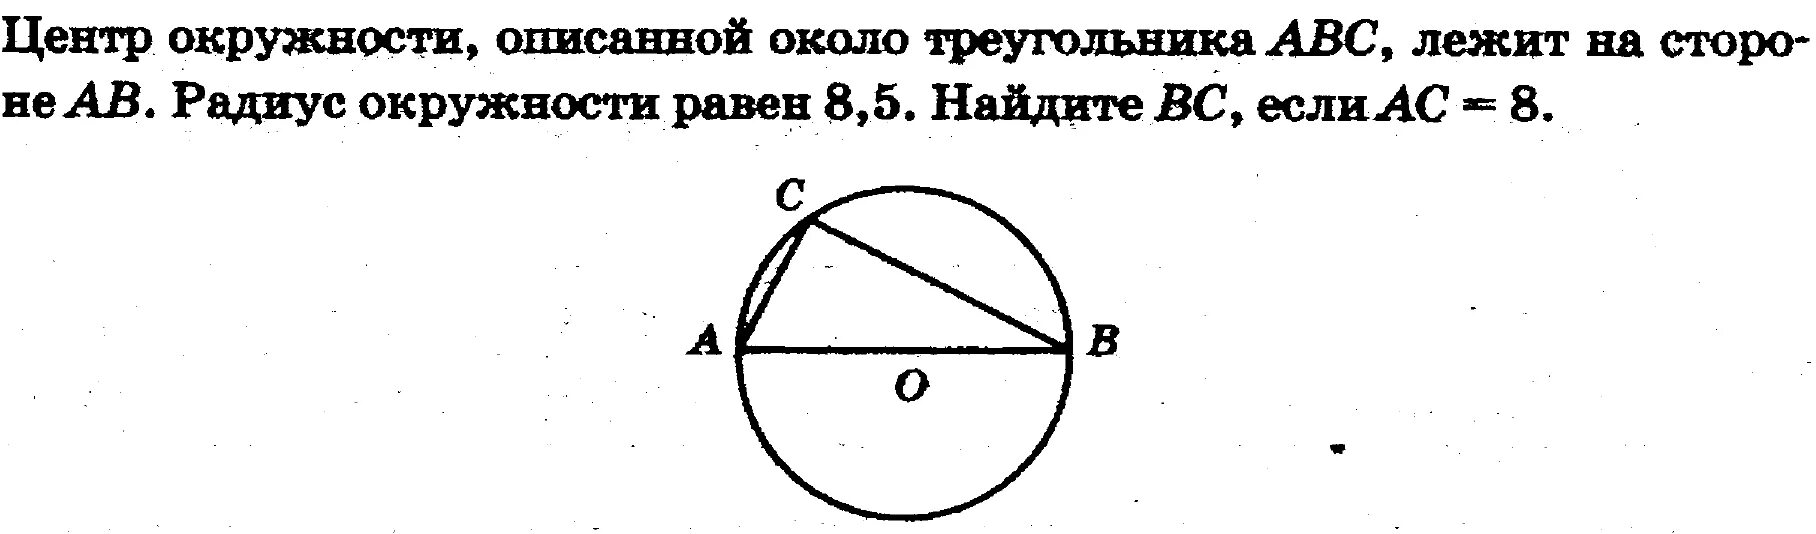 Радиус 20 5 ас 9. Центр окружности описанной около треугольника АВС. Центр окружности лежит на стороне треугольника. Центр окружности описанной около треу. Положение центра окружности описанной около треугольника.